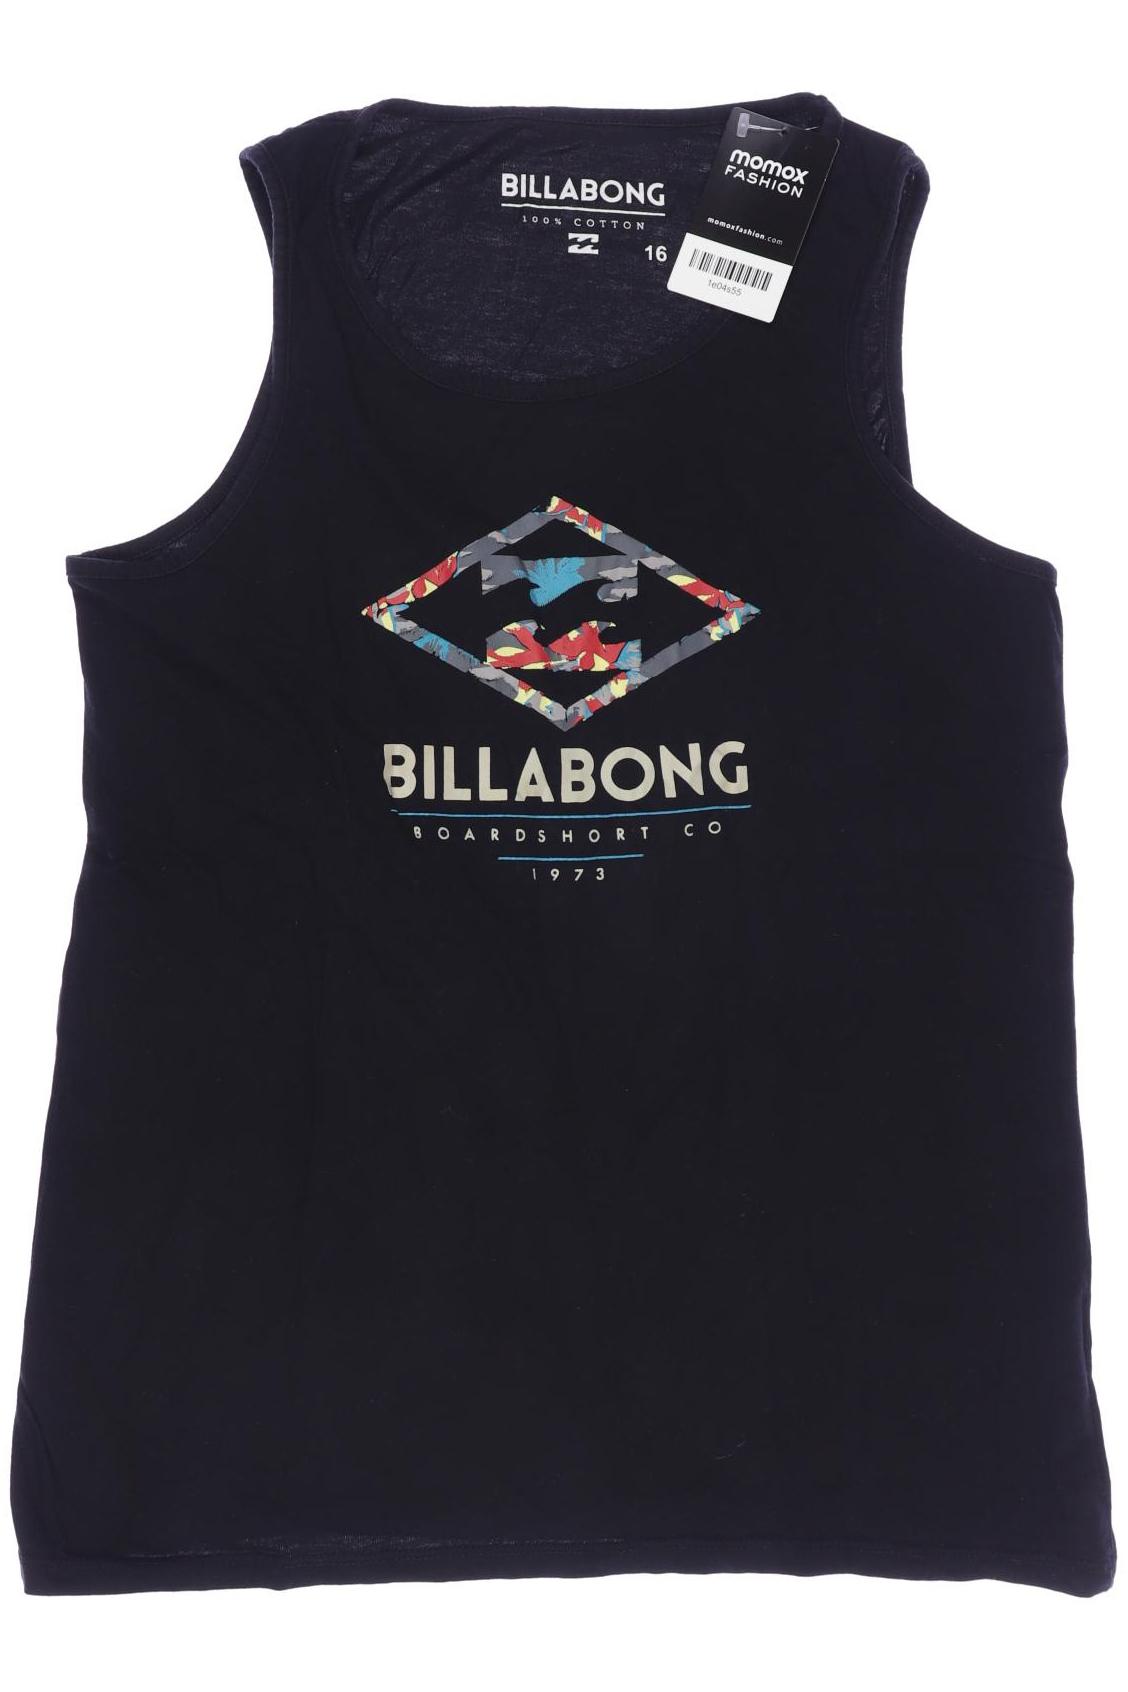 BILLABONG Jungen T-Shirt, schwarz von Billabong